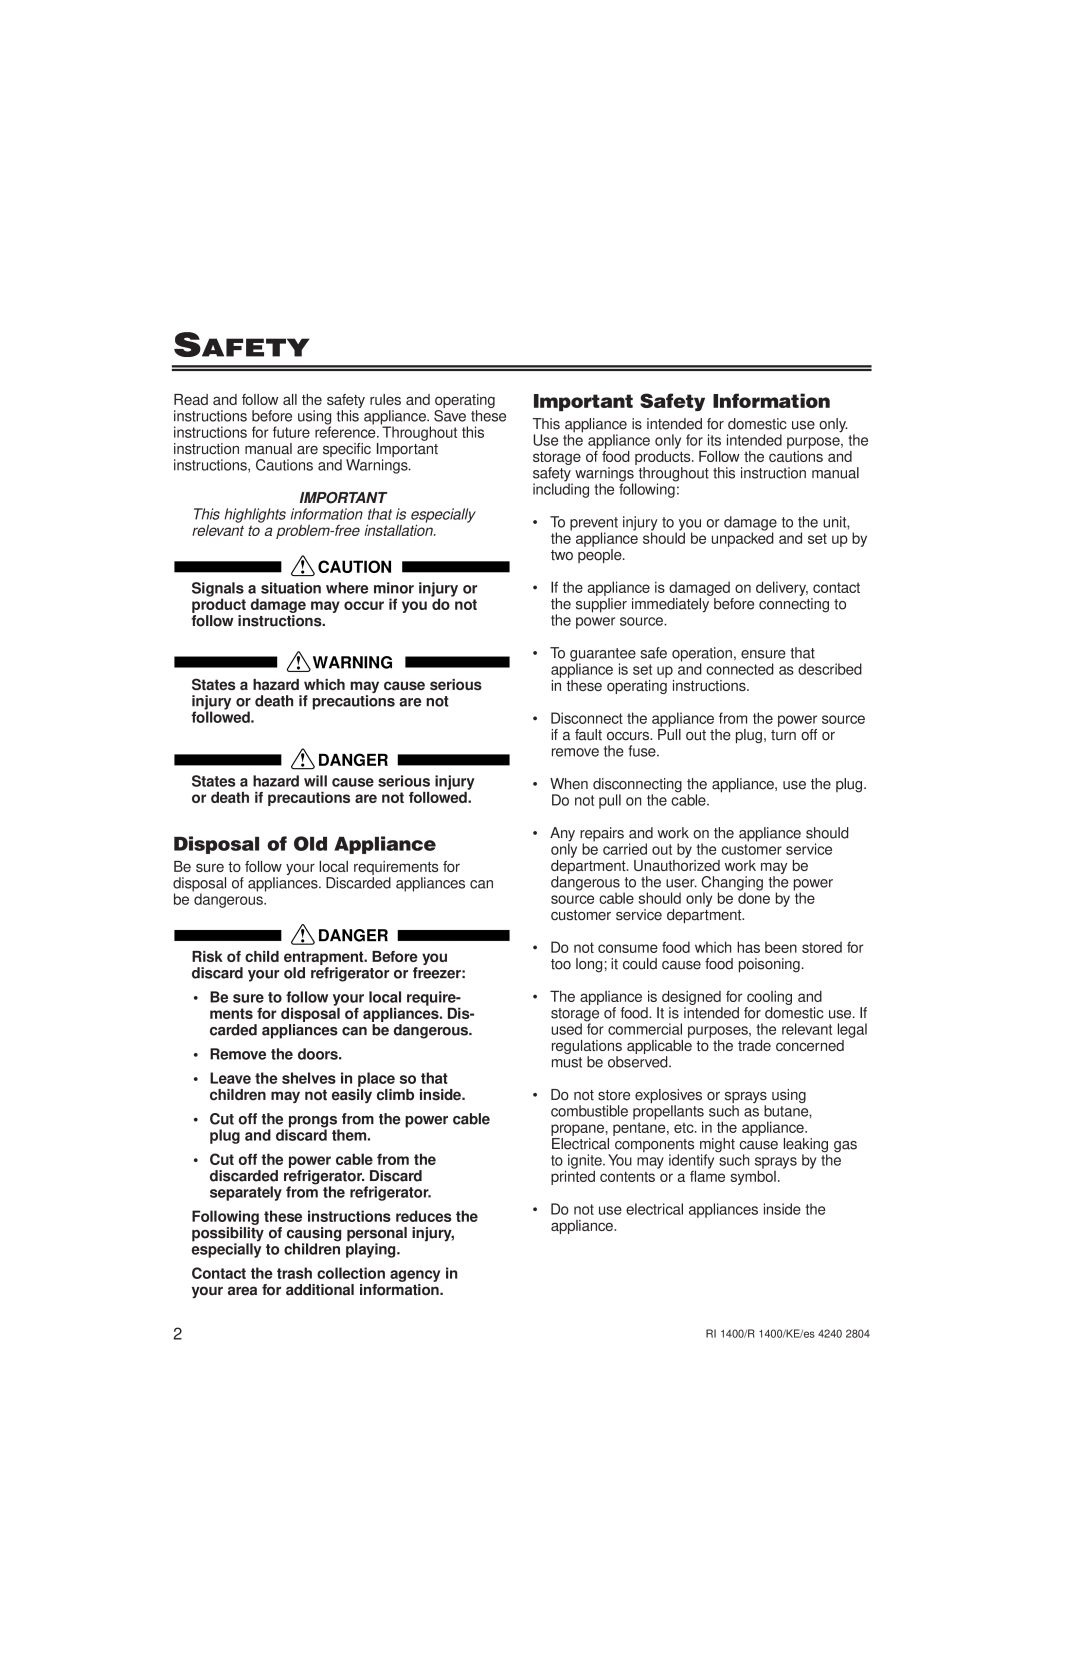 Liebherr R1400, KE/ES 4240 2804, RI1400, 7082 246-00 Disposal of Old Appliance, Important Safety Information, Danger 